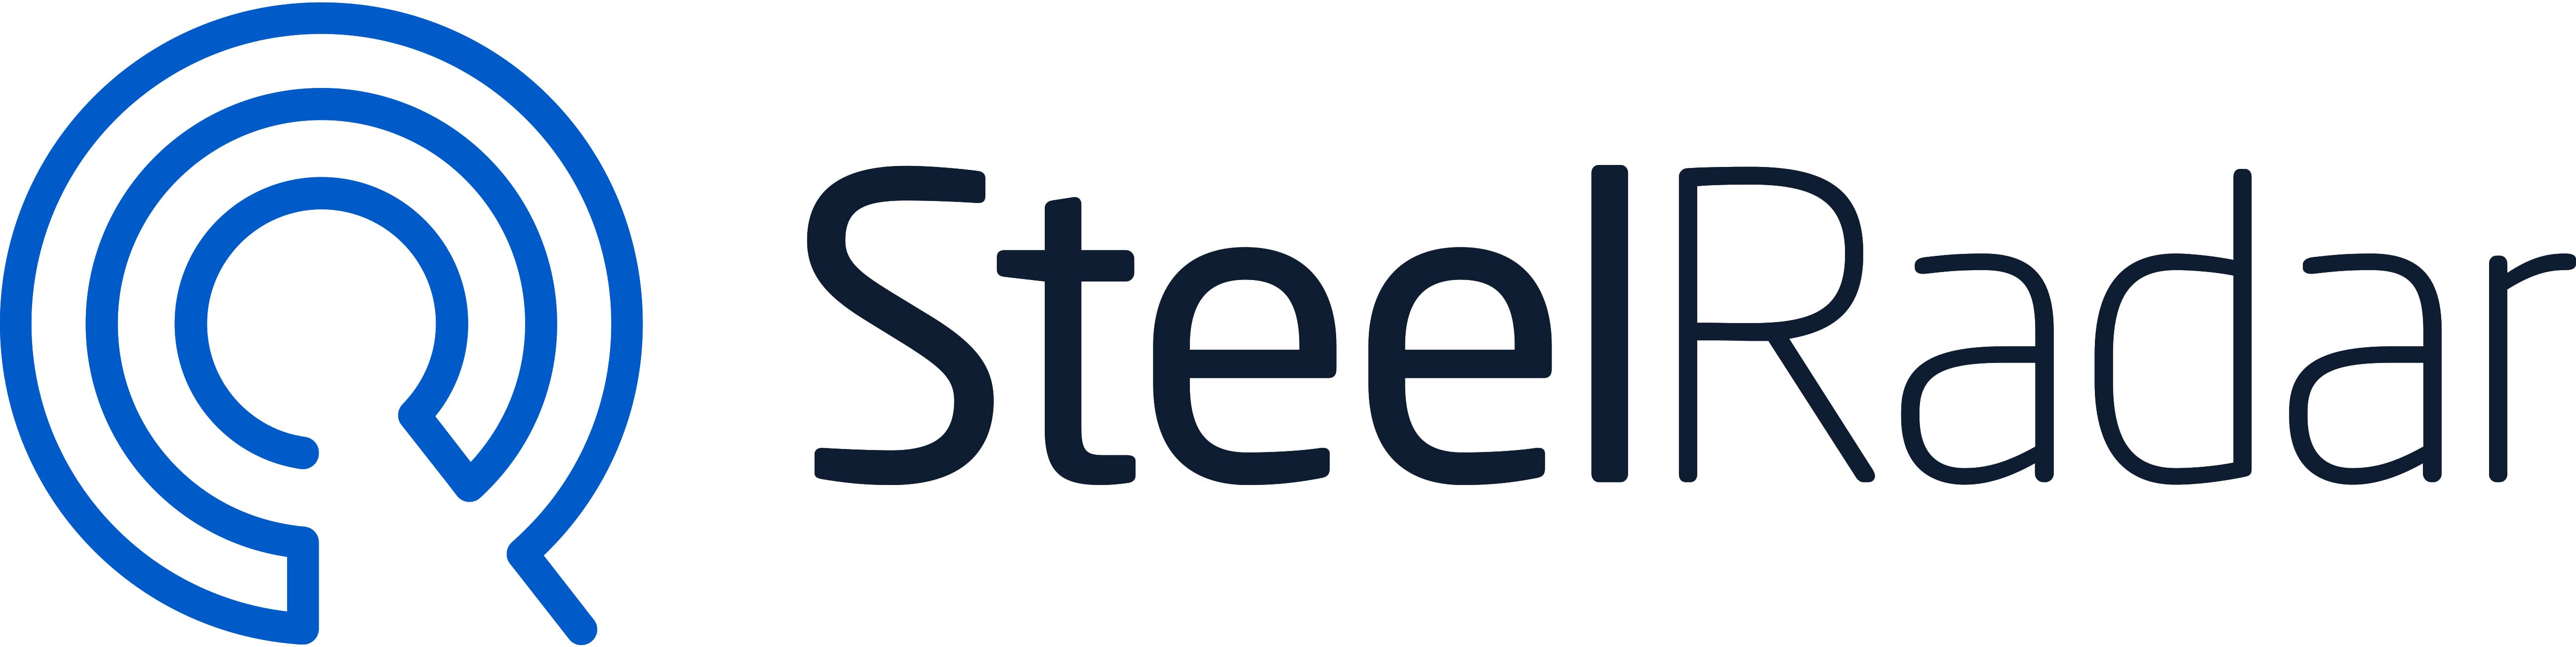 SteelRadar-Logo-jpeg.jpg